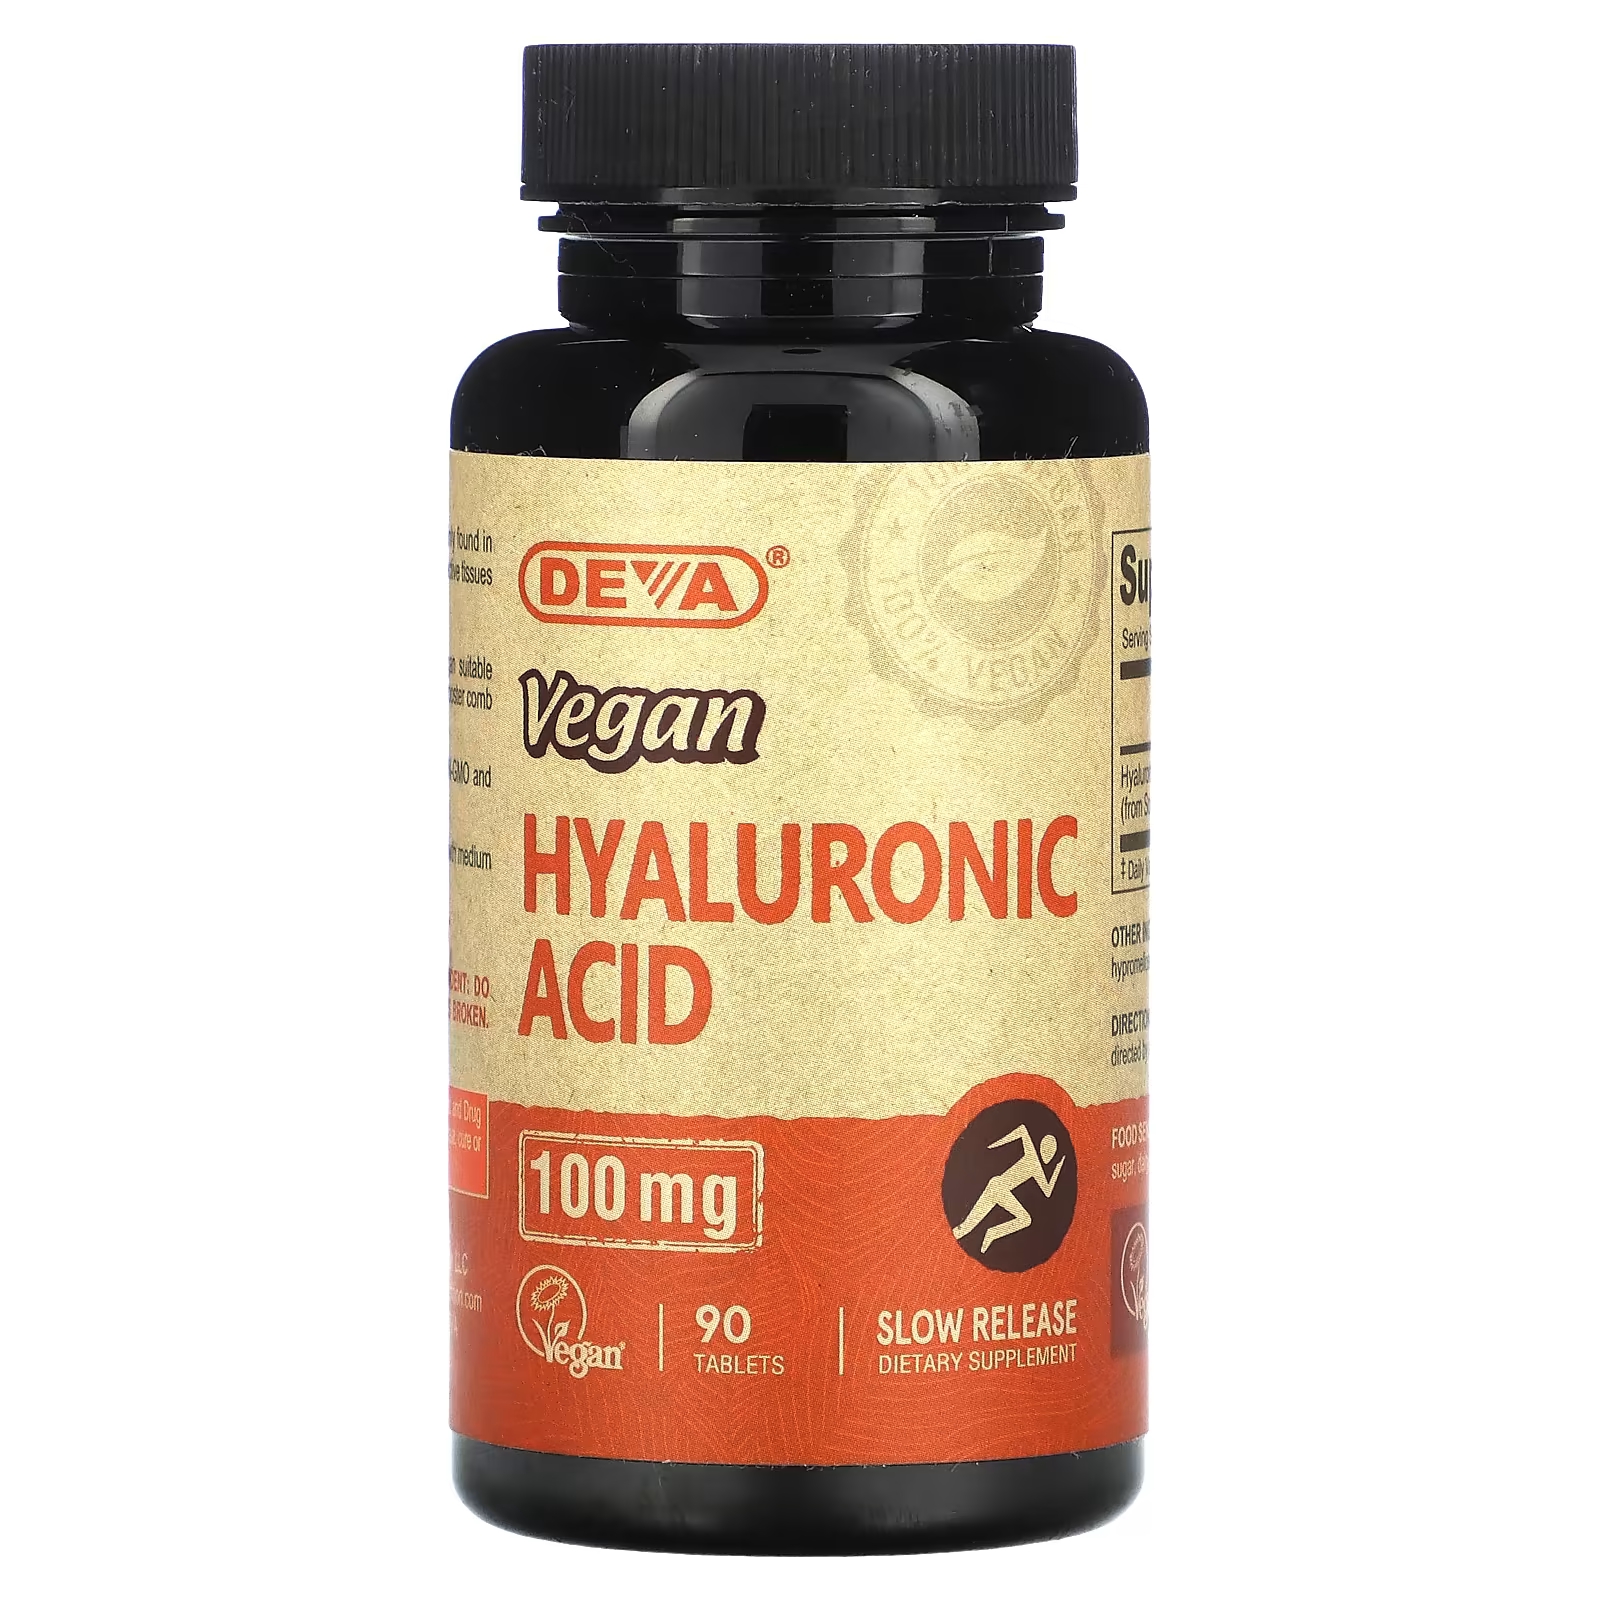 Пищевая добавка Deva Vegan Hyaluronic Acid 100 мг пищевая добавка deva vegan hyaluronic acid 100 мг